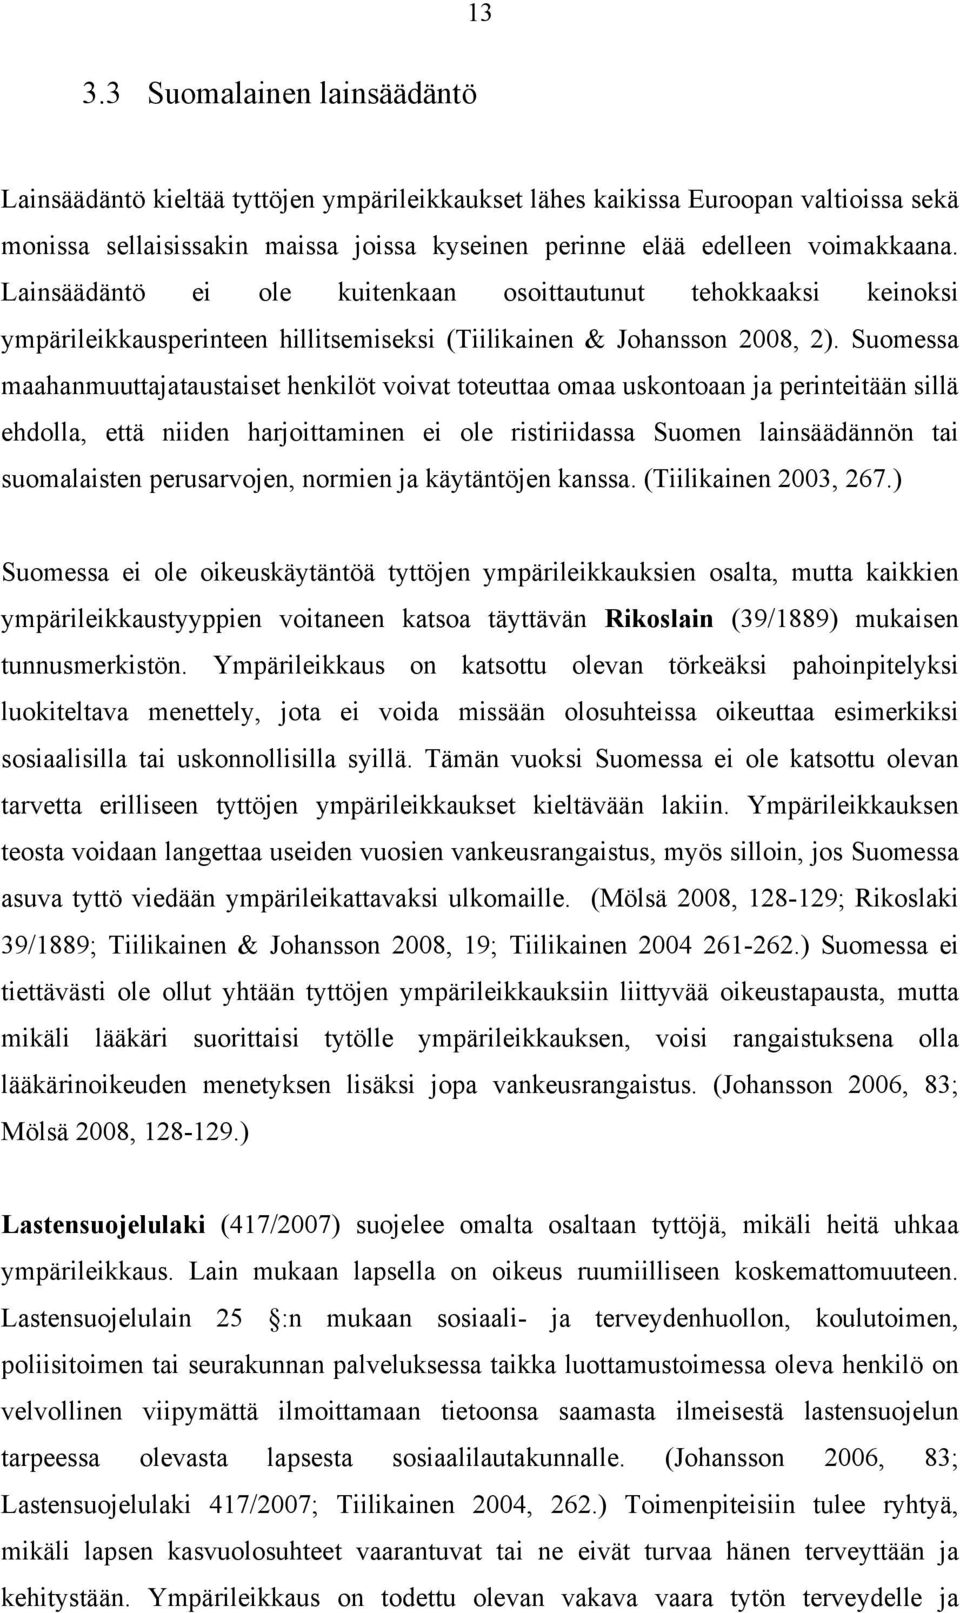 Suomessa maahanmuuttajataustaiset henkilöt voivat toteuttaa omaa uskontoaan ja perinteitään sillä ehdolla, että niiden harjoittaminen ei ole ristiriidassa Suomen lainsäädännön tai suomalaisten